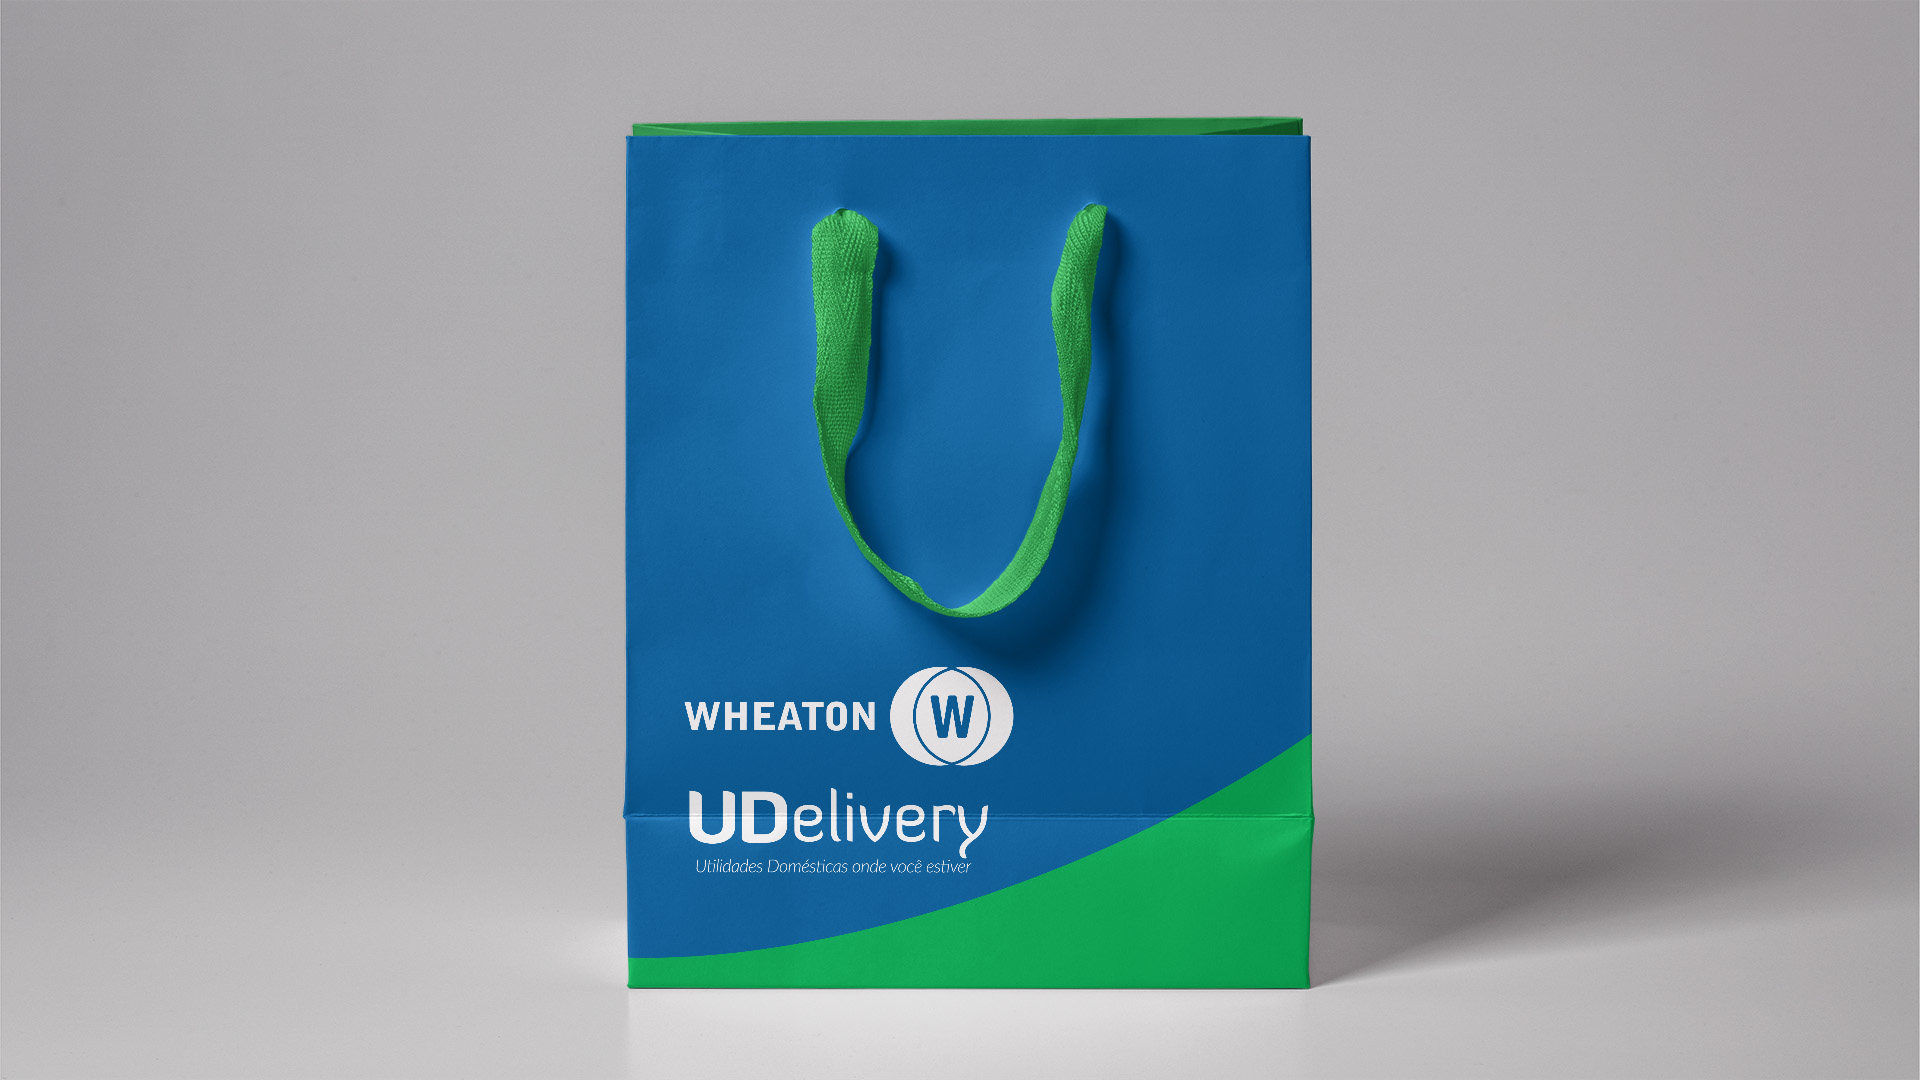 Imagem de sacola de pepel com identidade visual do projeto de PDV móvel Wheaton UDelivery.